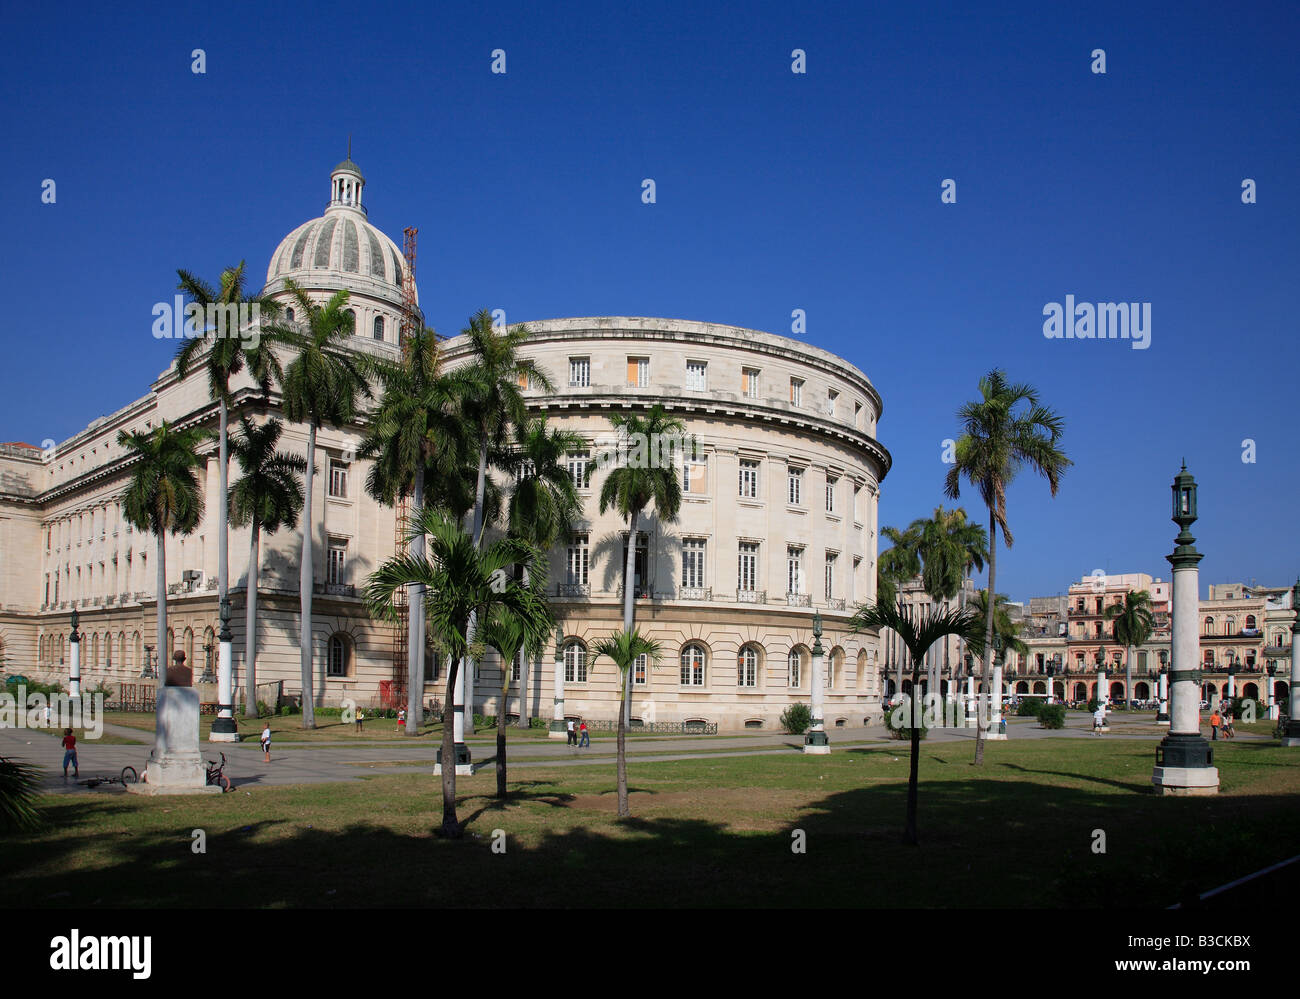 El Capitolio ou le Capitole National de La Havane Cuba a été le siège du gouvernement à Cuba jusqu'après la Révolution cubaine Banque D'Images